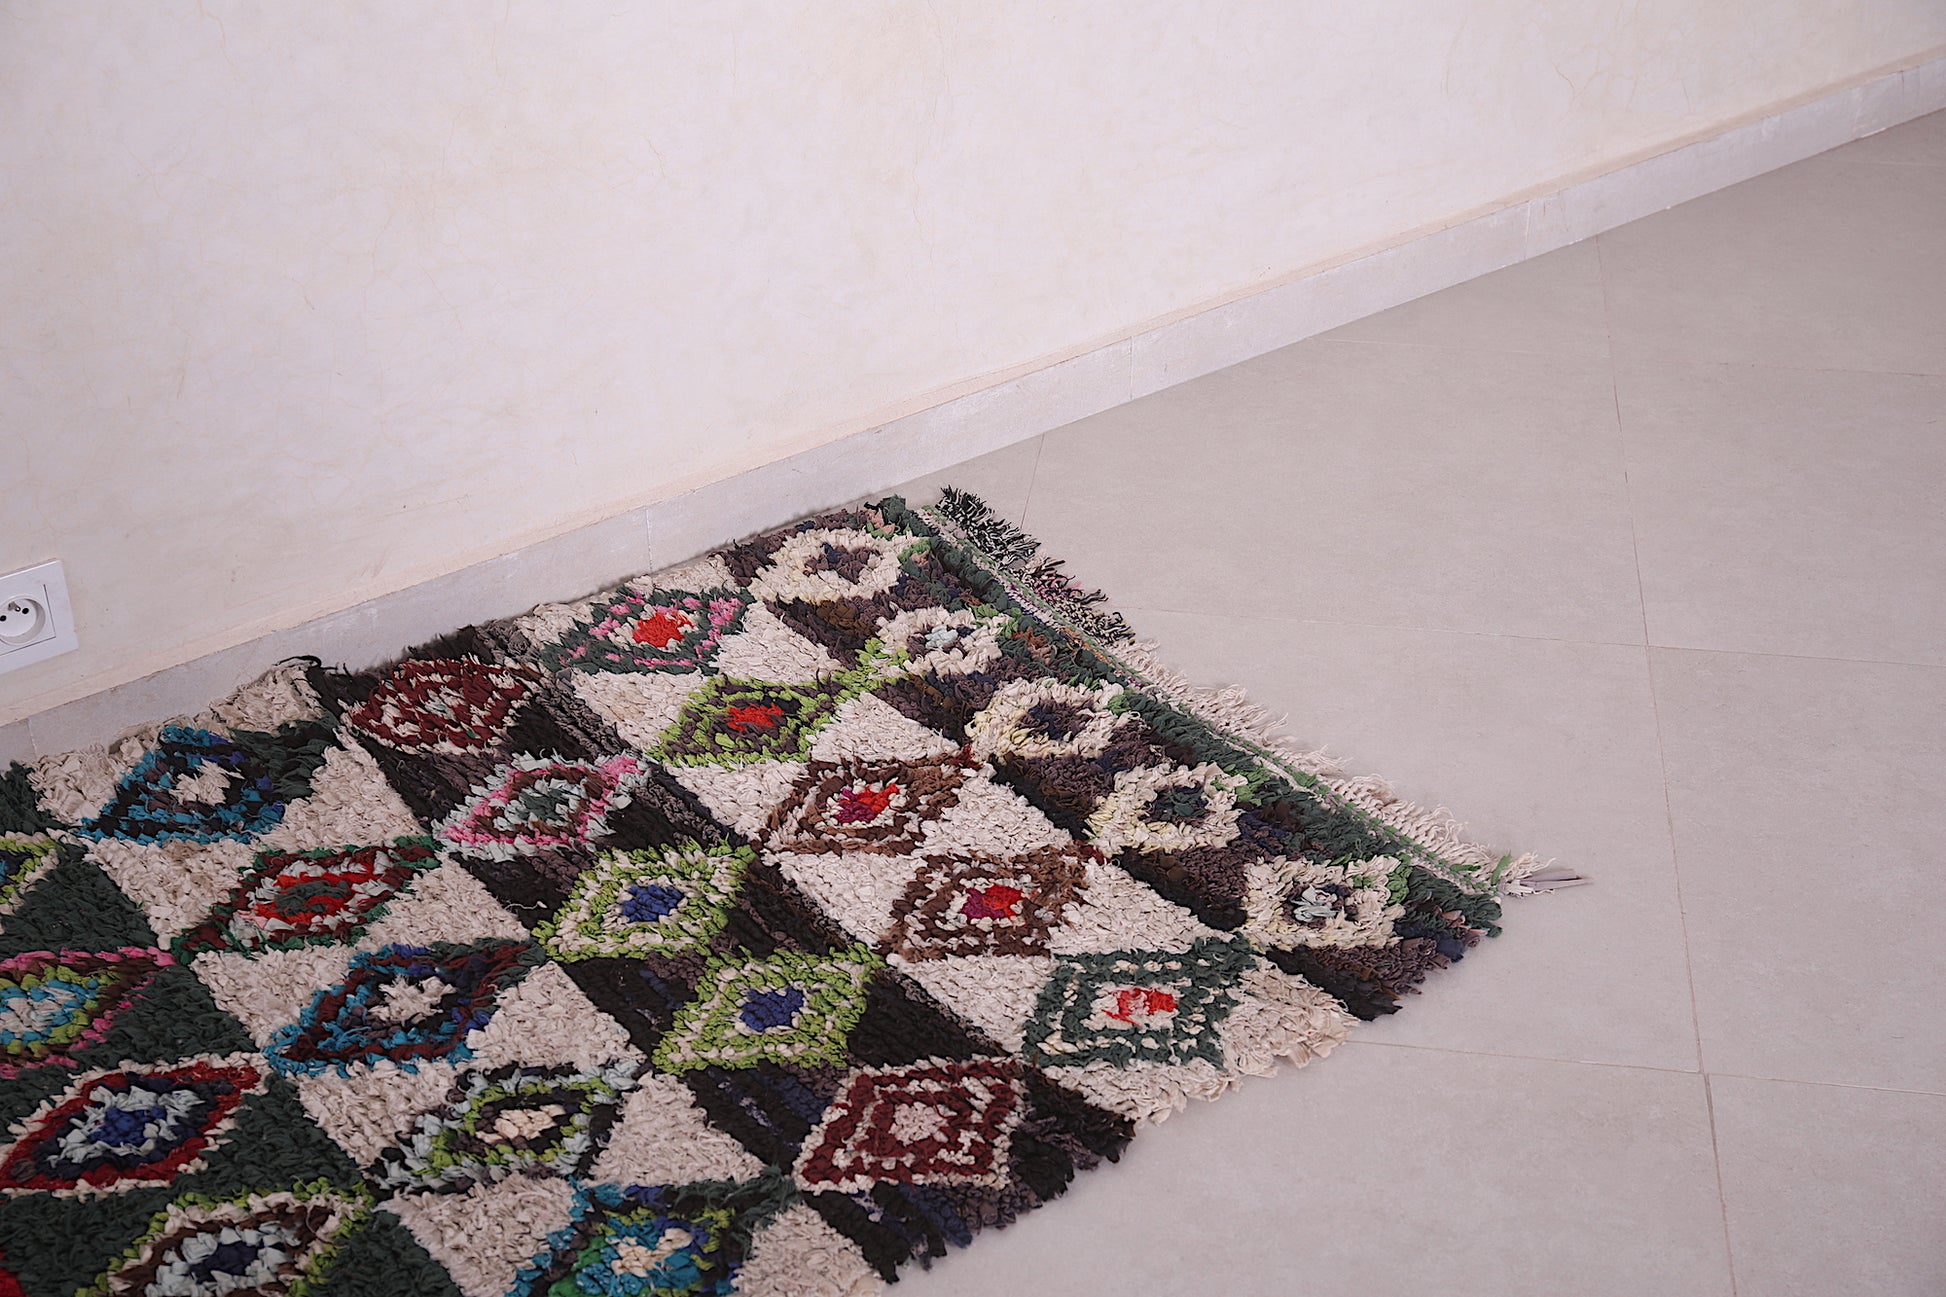 Boucherouite azilal rug 3 x 5.1 Feet